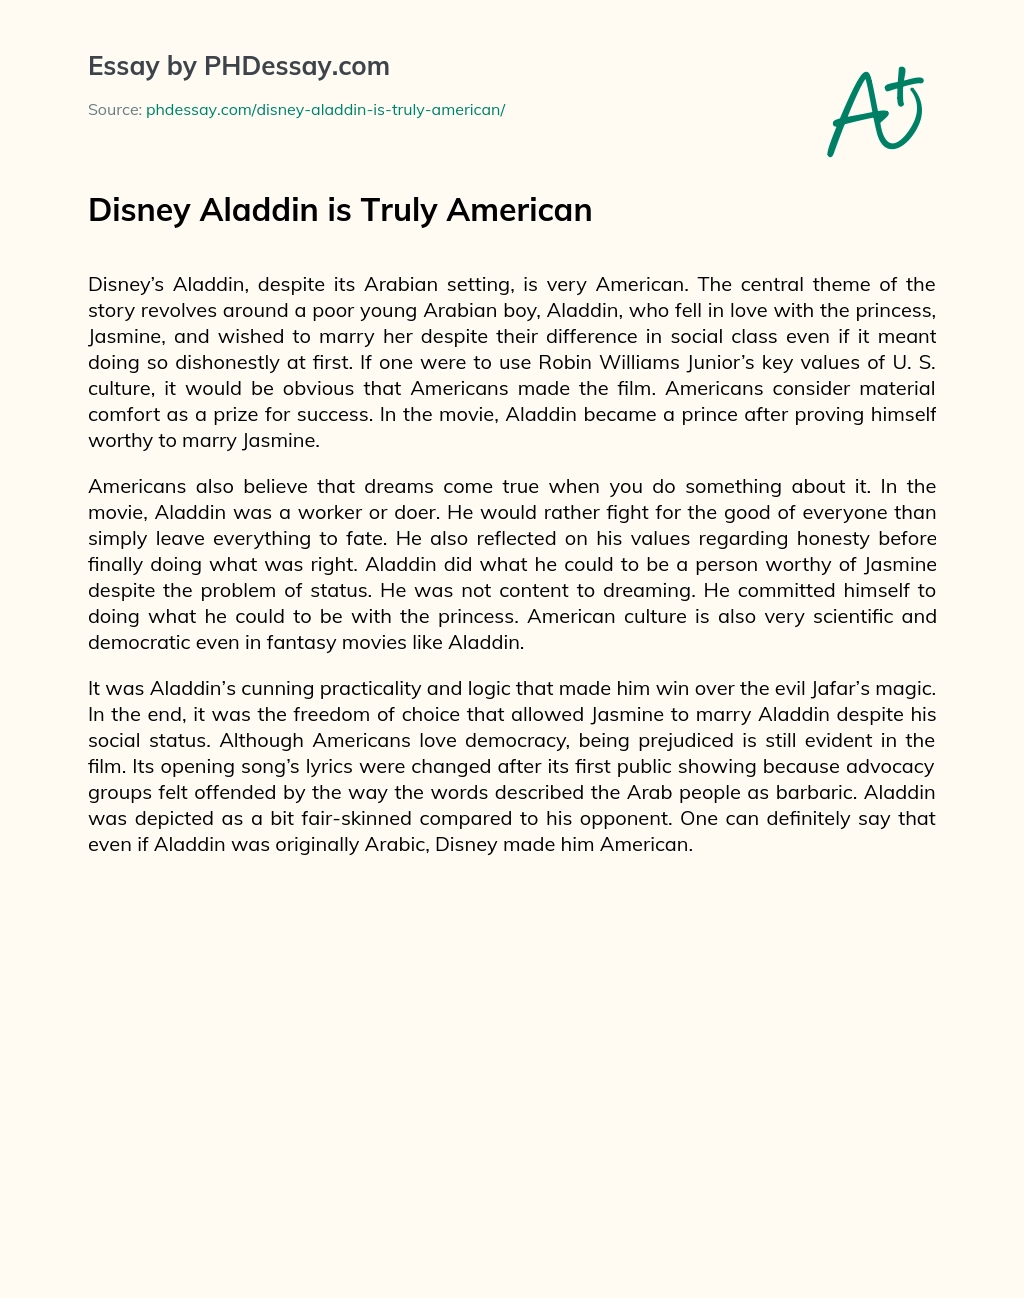 Disney Aladdin is Truly American essay